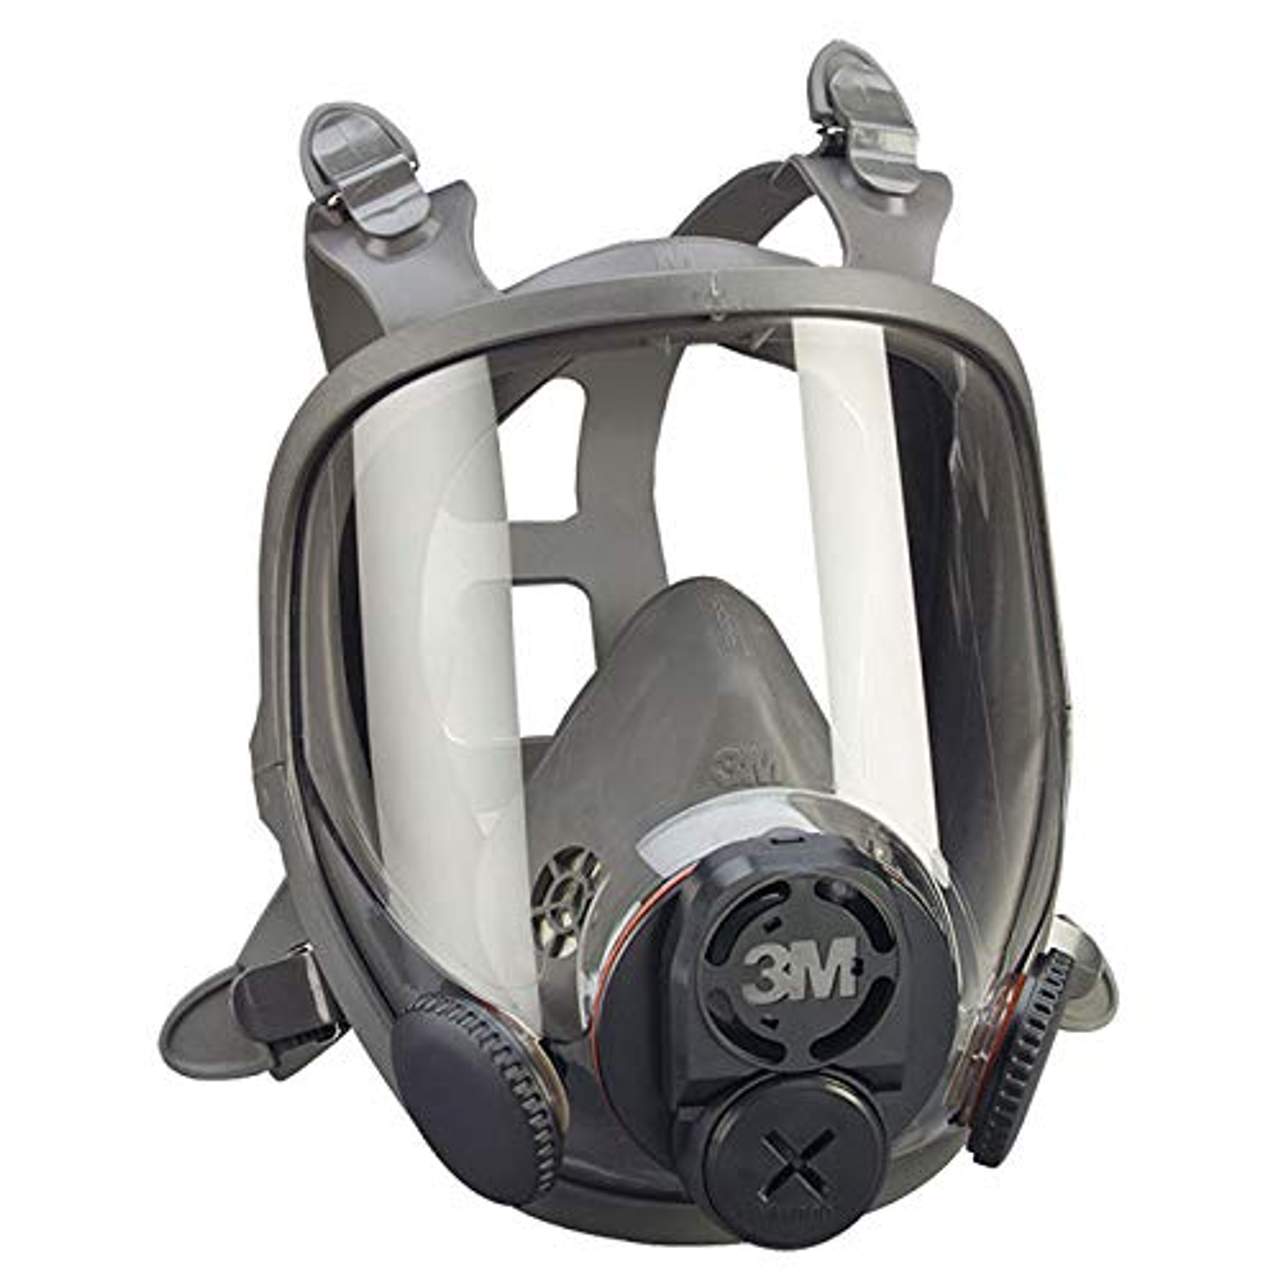 3 M wiederverwendbar Full Face Maske Atemschutzmaske 6900